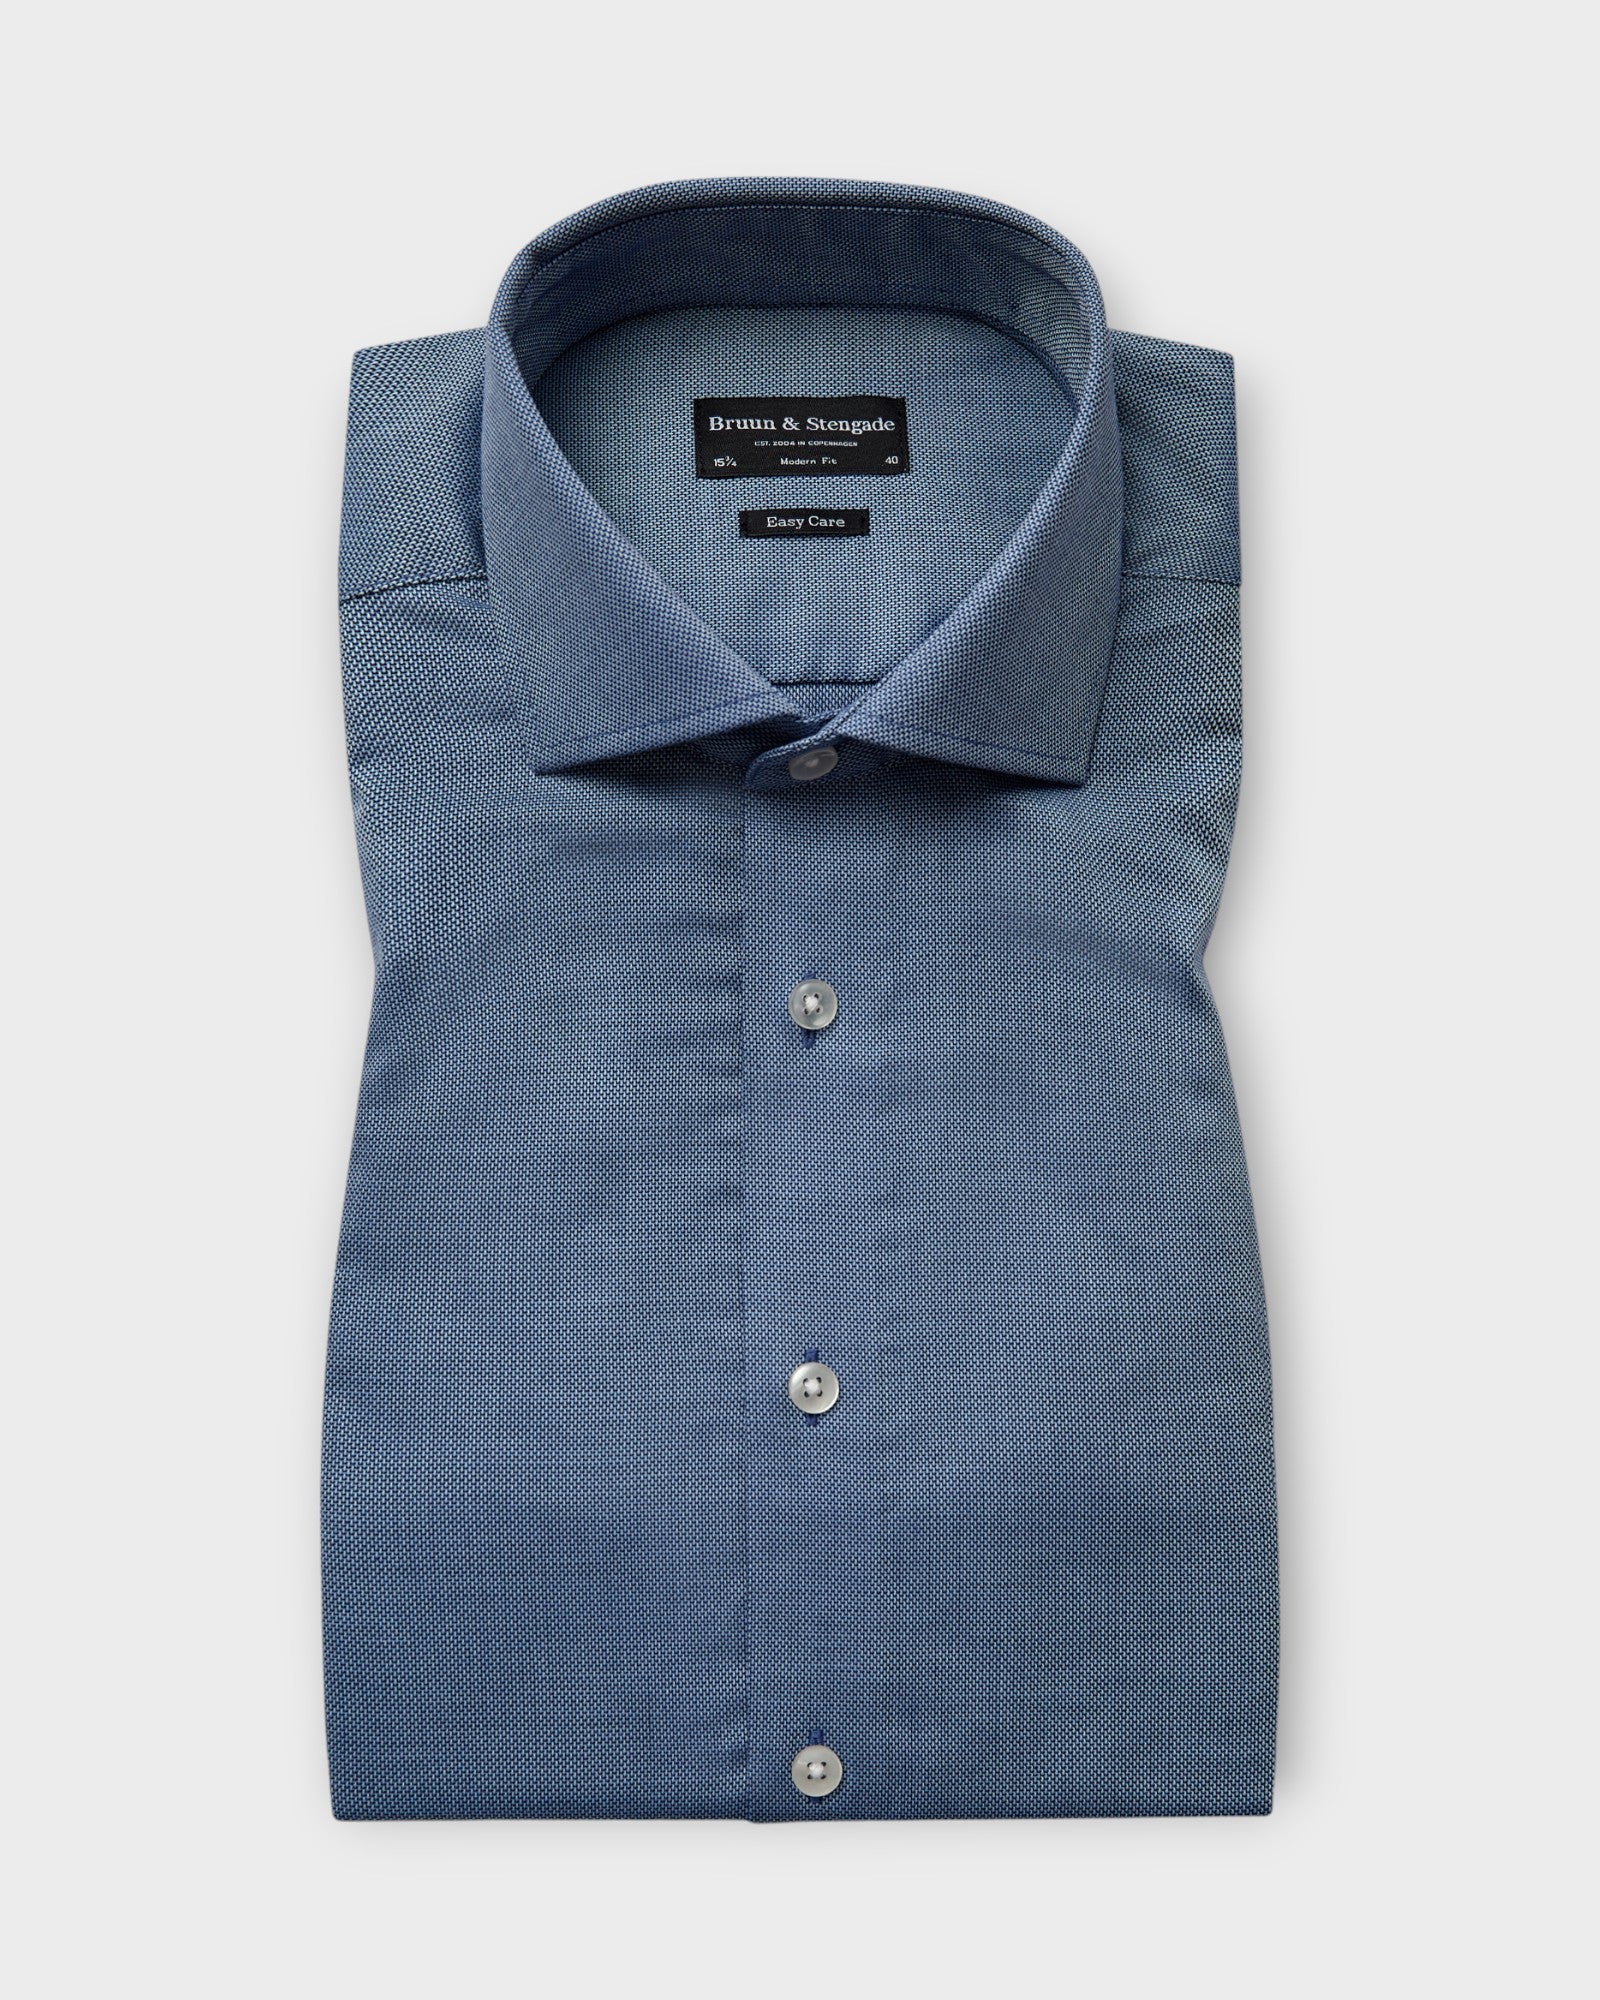 BS Gronkowski Modern Fit Shirt Blue, blå langærmet  Bruun og Stengade Skjorte. Her set forfra.